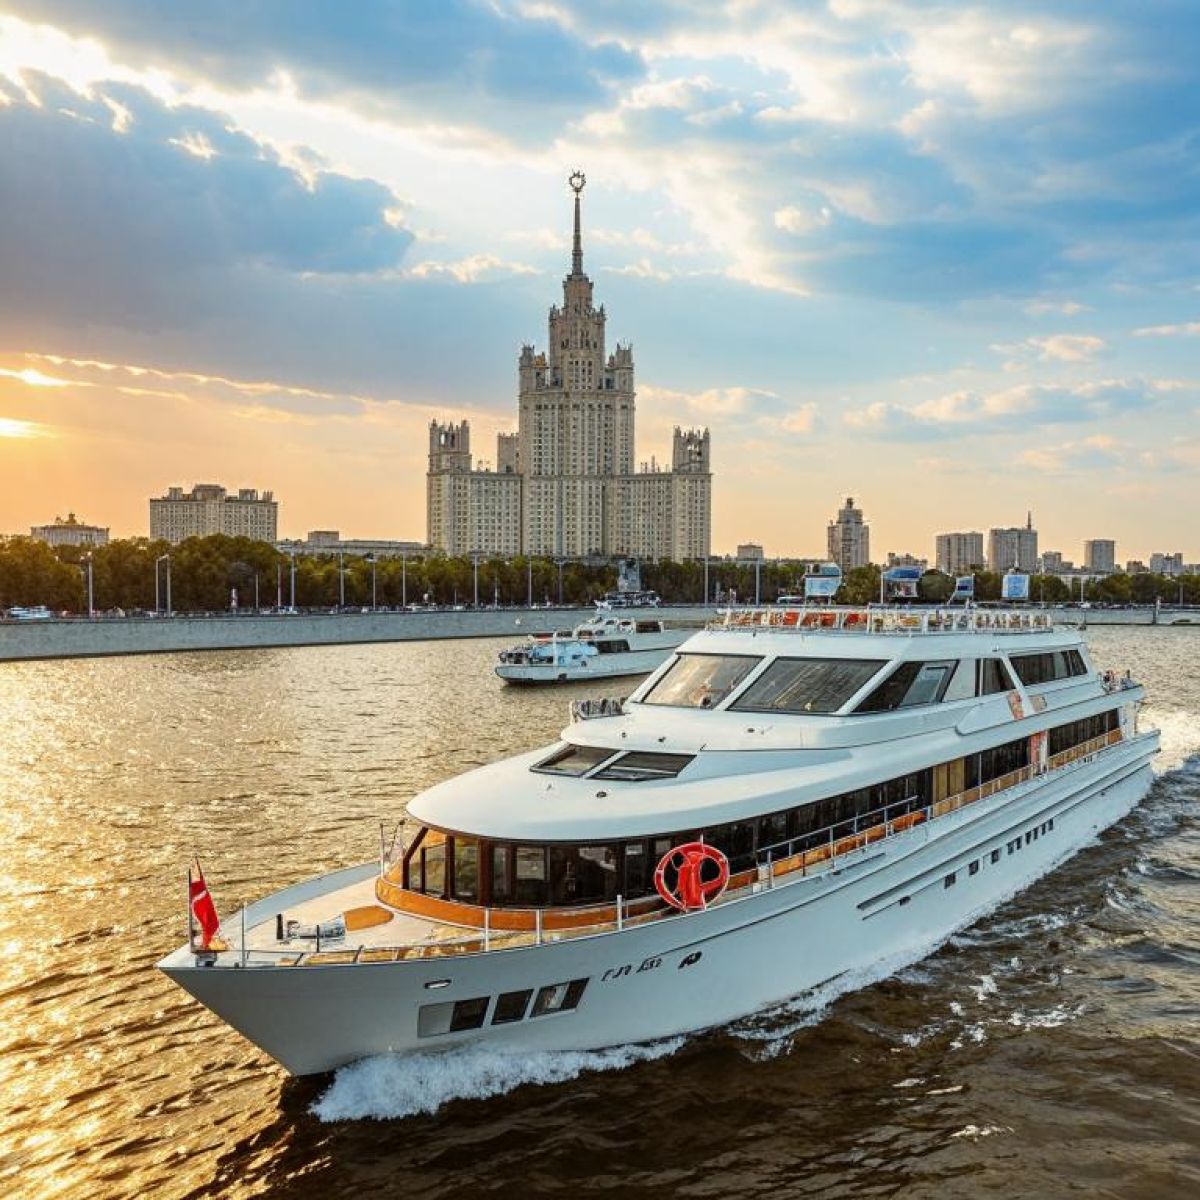 Аренда яхты для прогулки по центру Москвы: новый взгляд на город